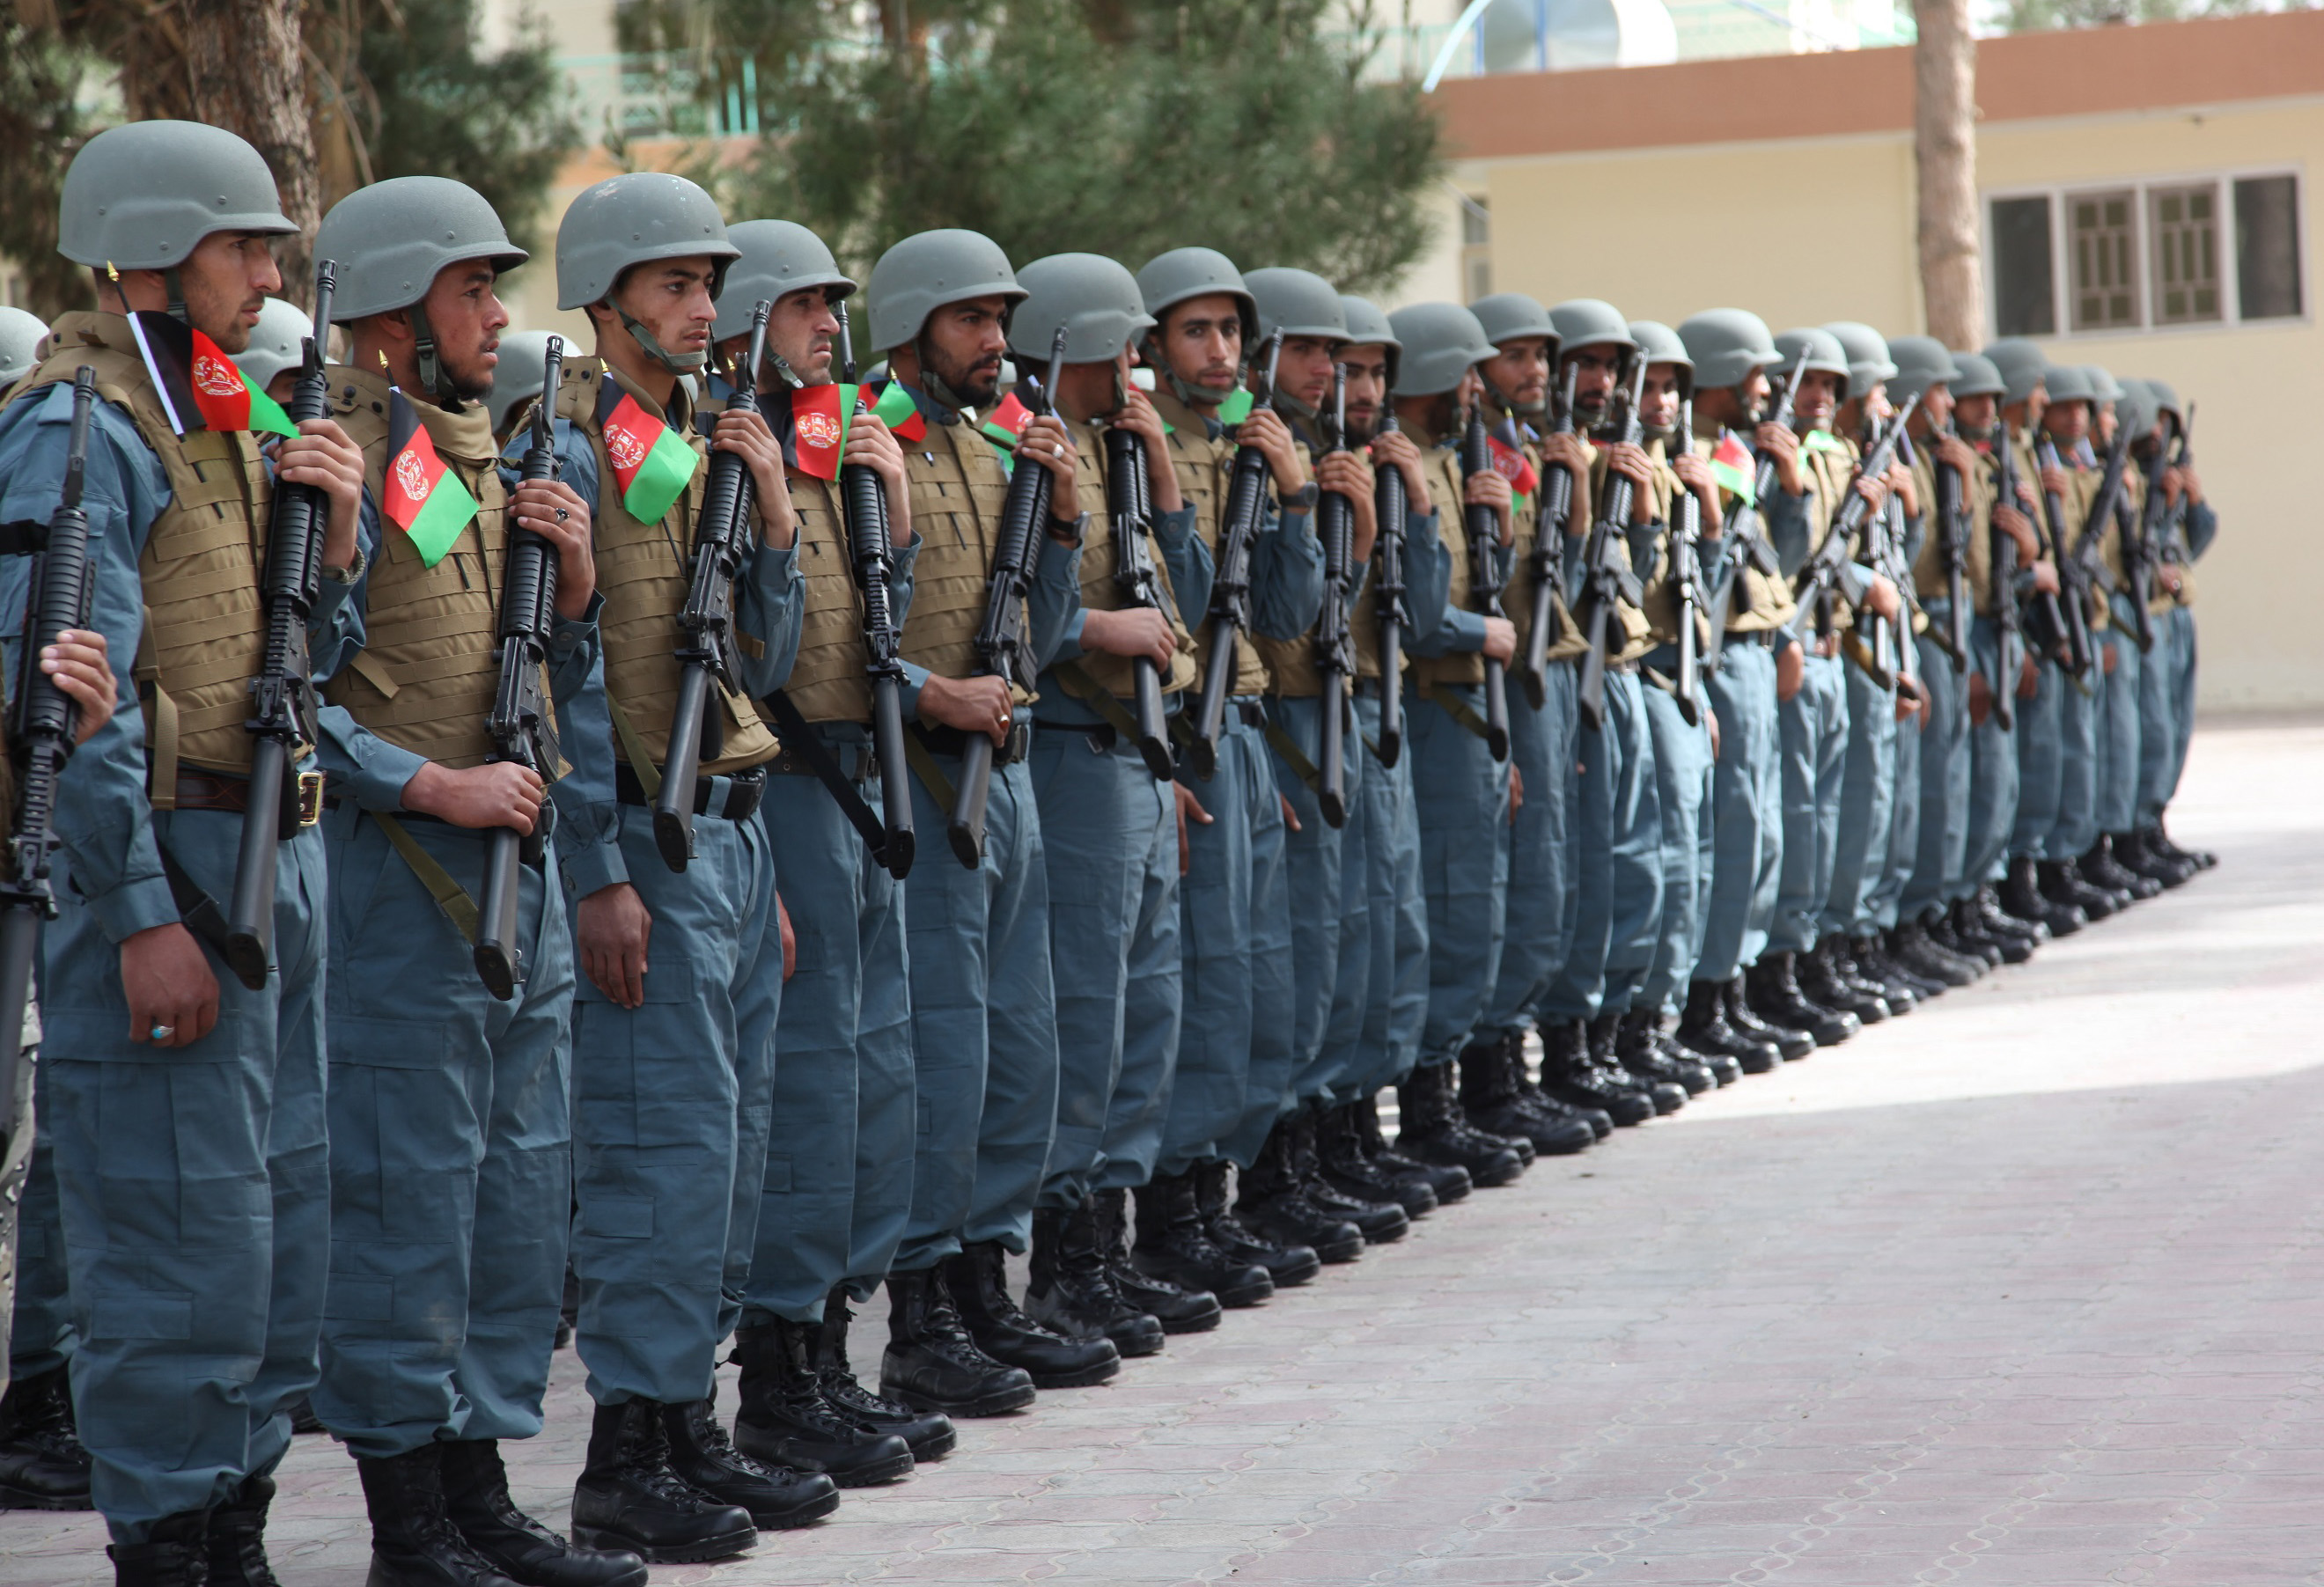 2月27日,在阿富汗南部赫尔曼德省拉什卡尔加,阿安全部队士兵参加纪念